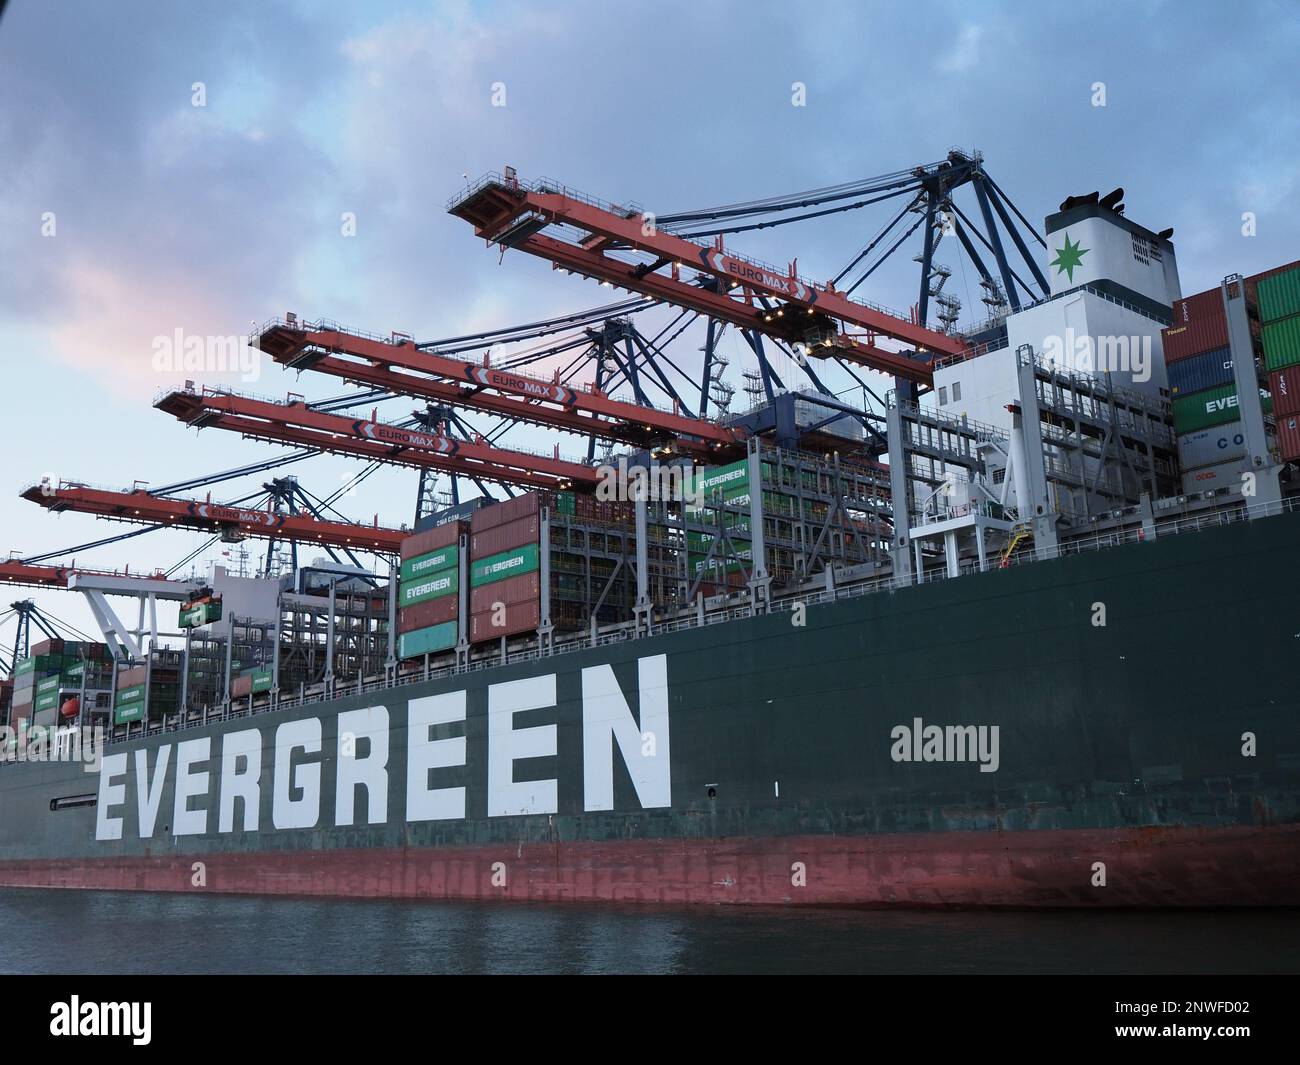 La spedizione Evergreen 'sempre dotata' può trasportare circa 20,000 container. Porto di Rotterdam, Paesi Bassi. Foto Stock